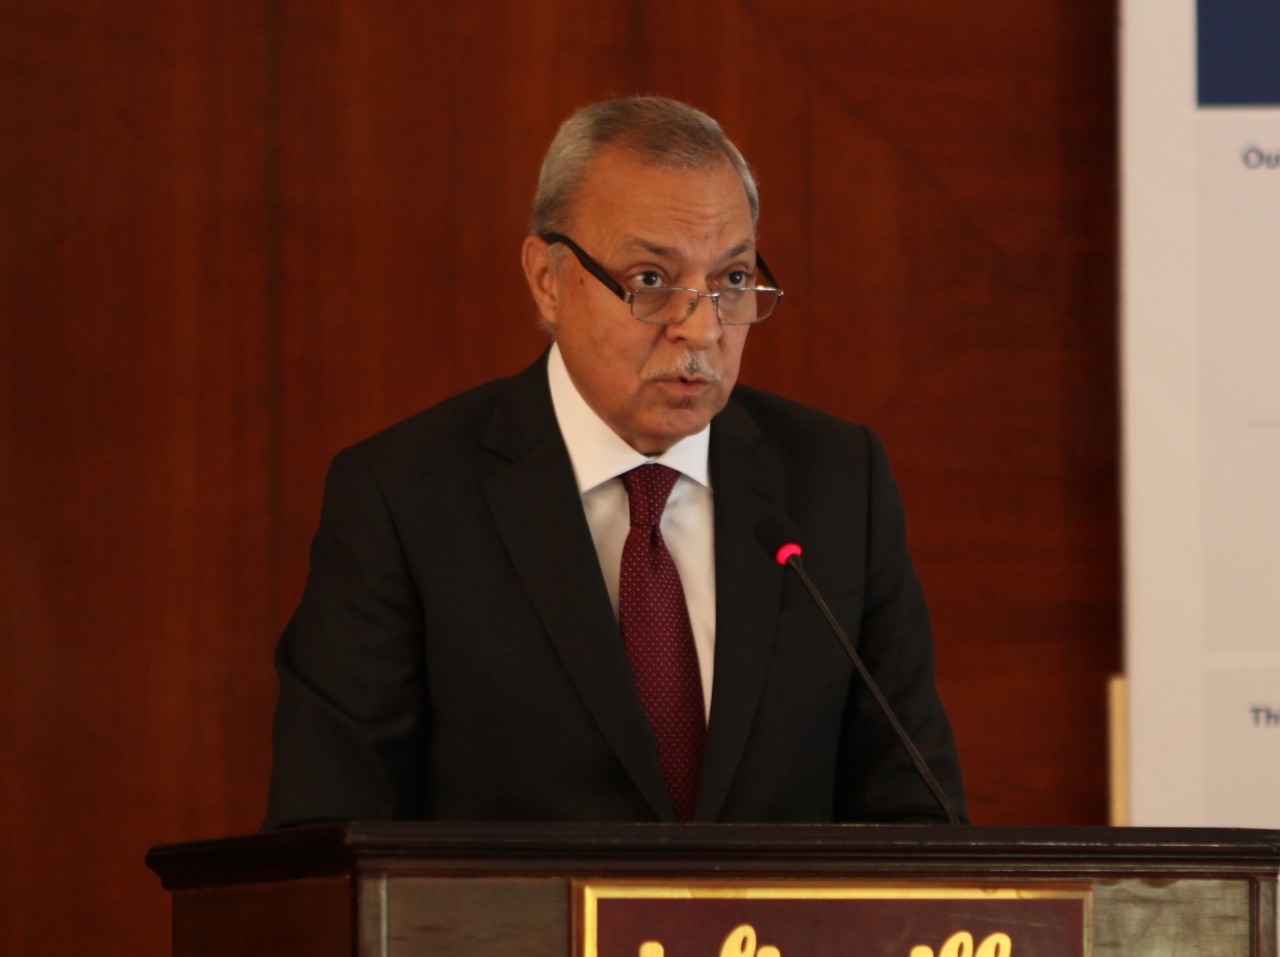   تحت رعاية رئيس الوزراء «التكتلات والتنمية الاقتصادية في صعيد مصر» مؤتمر النداء السنوي السادس بالأقصر